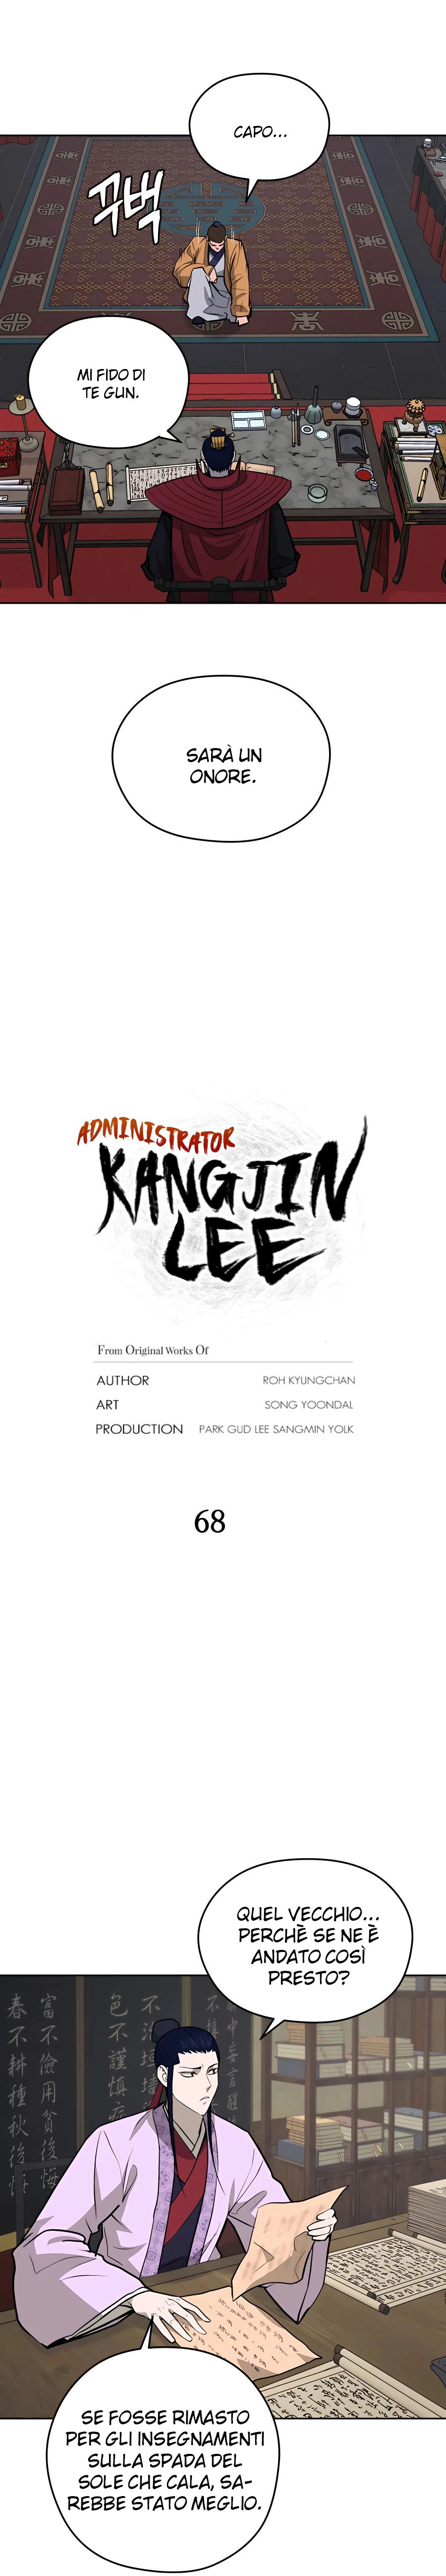  Administrator - Kang Jin Lee - ch 068 Zeurel